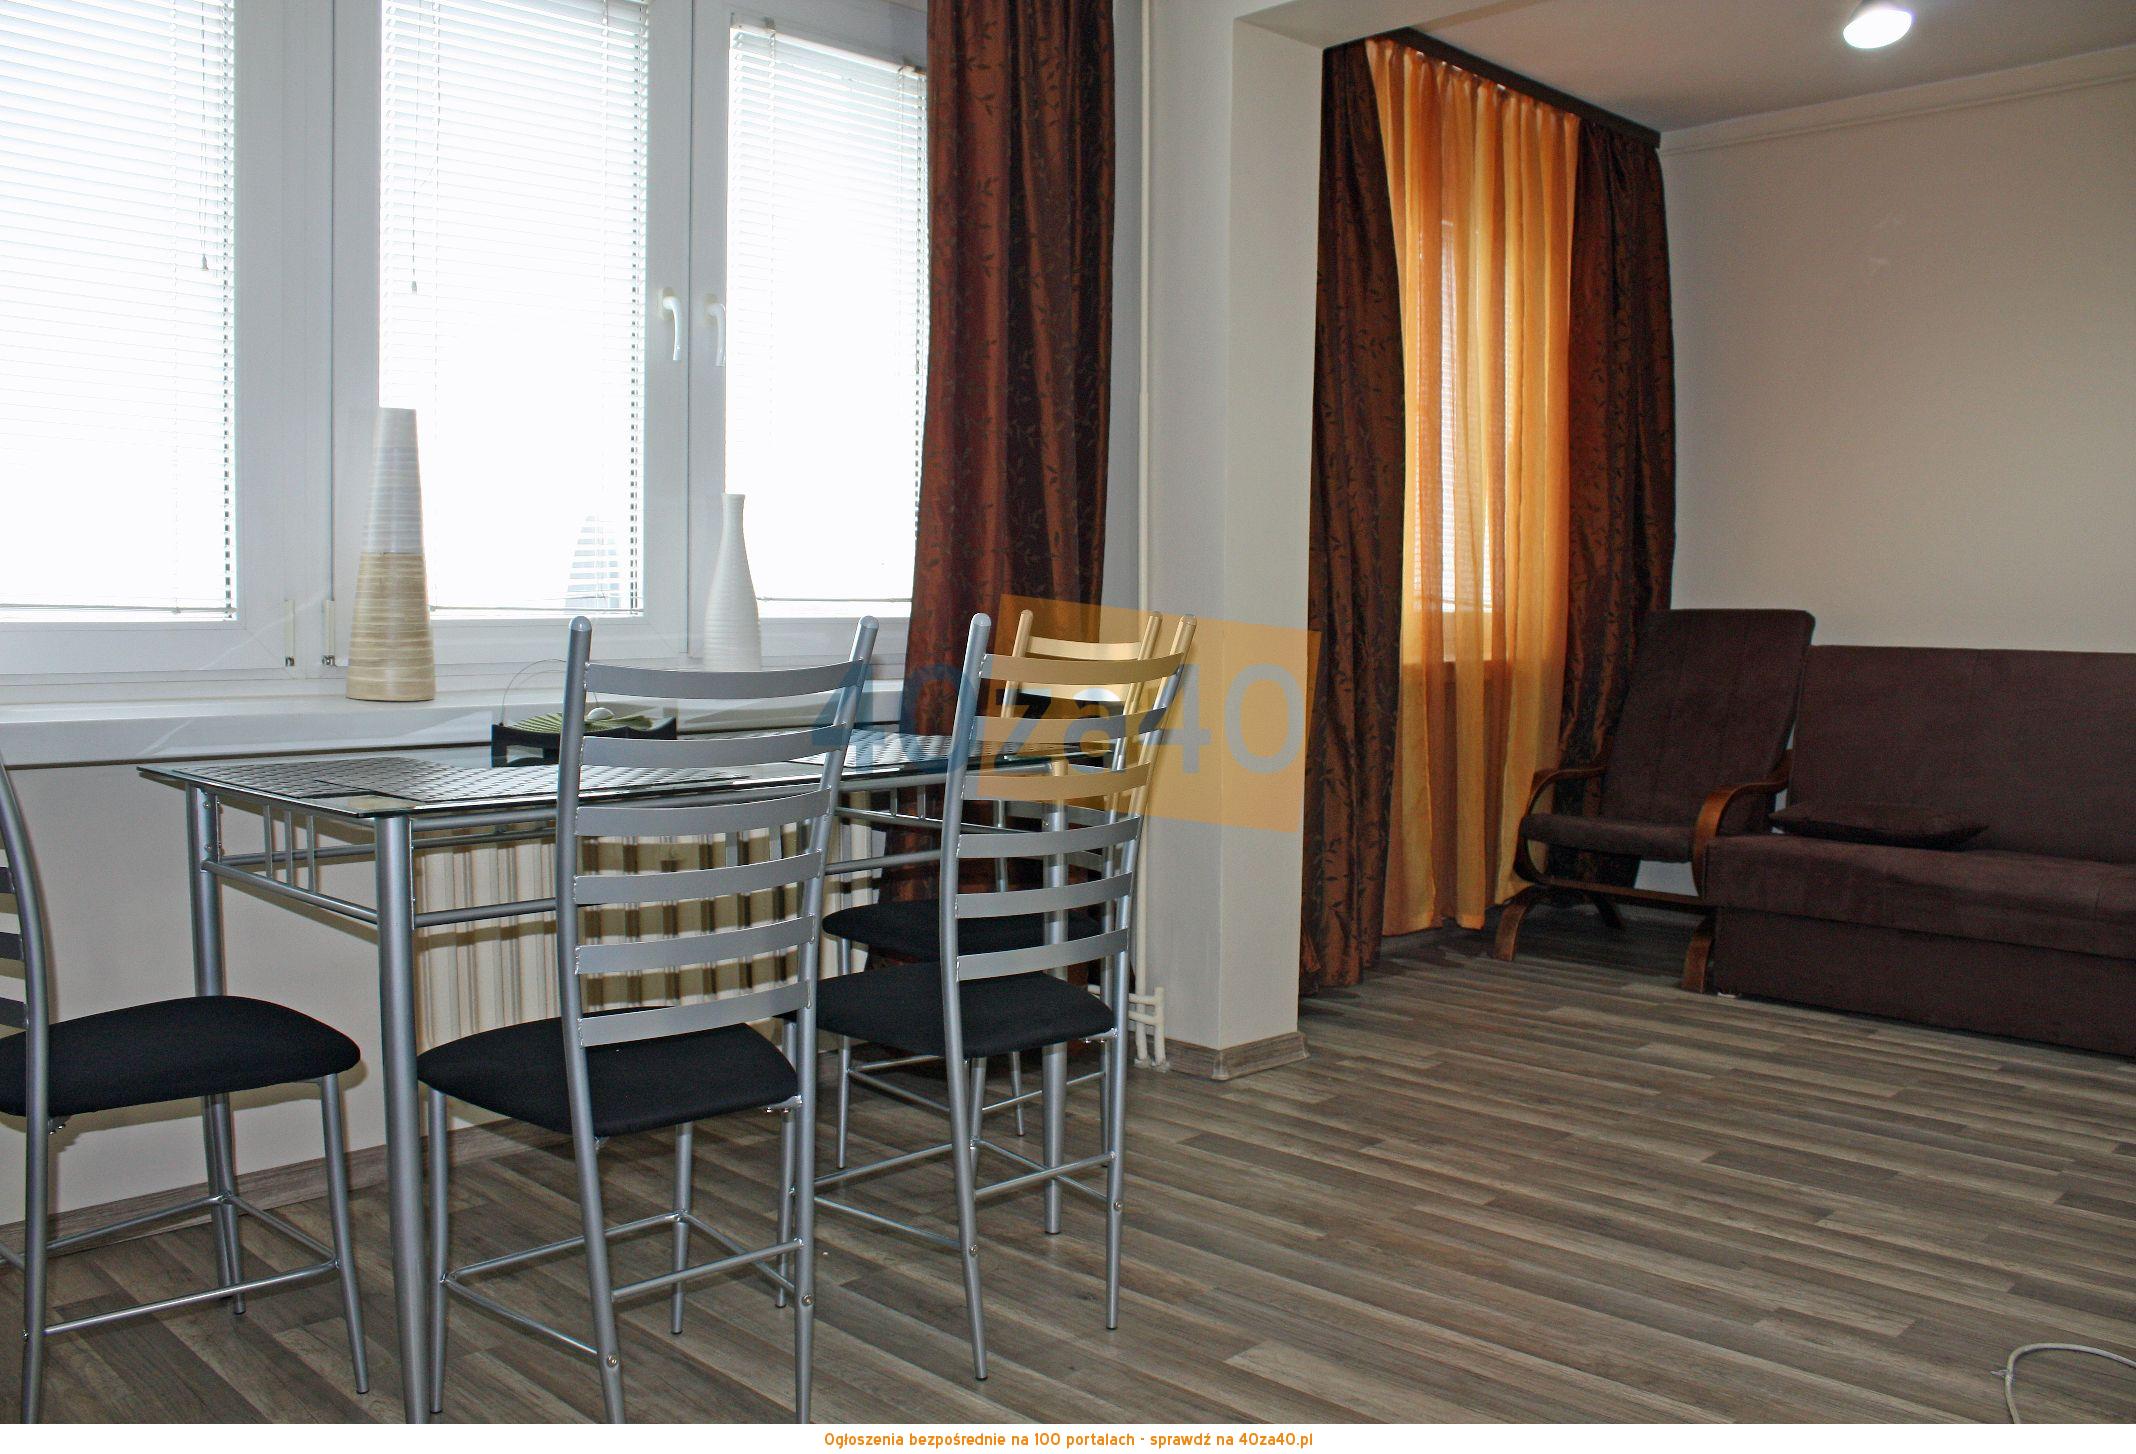 Mieszkanie do wynajęcia, pokoje: 1, cena: 750,00 PLN, Łódź, kontakt: 669330339